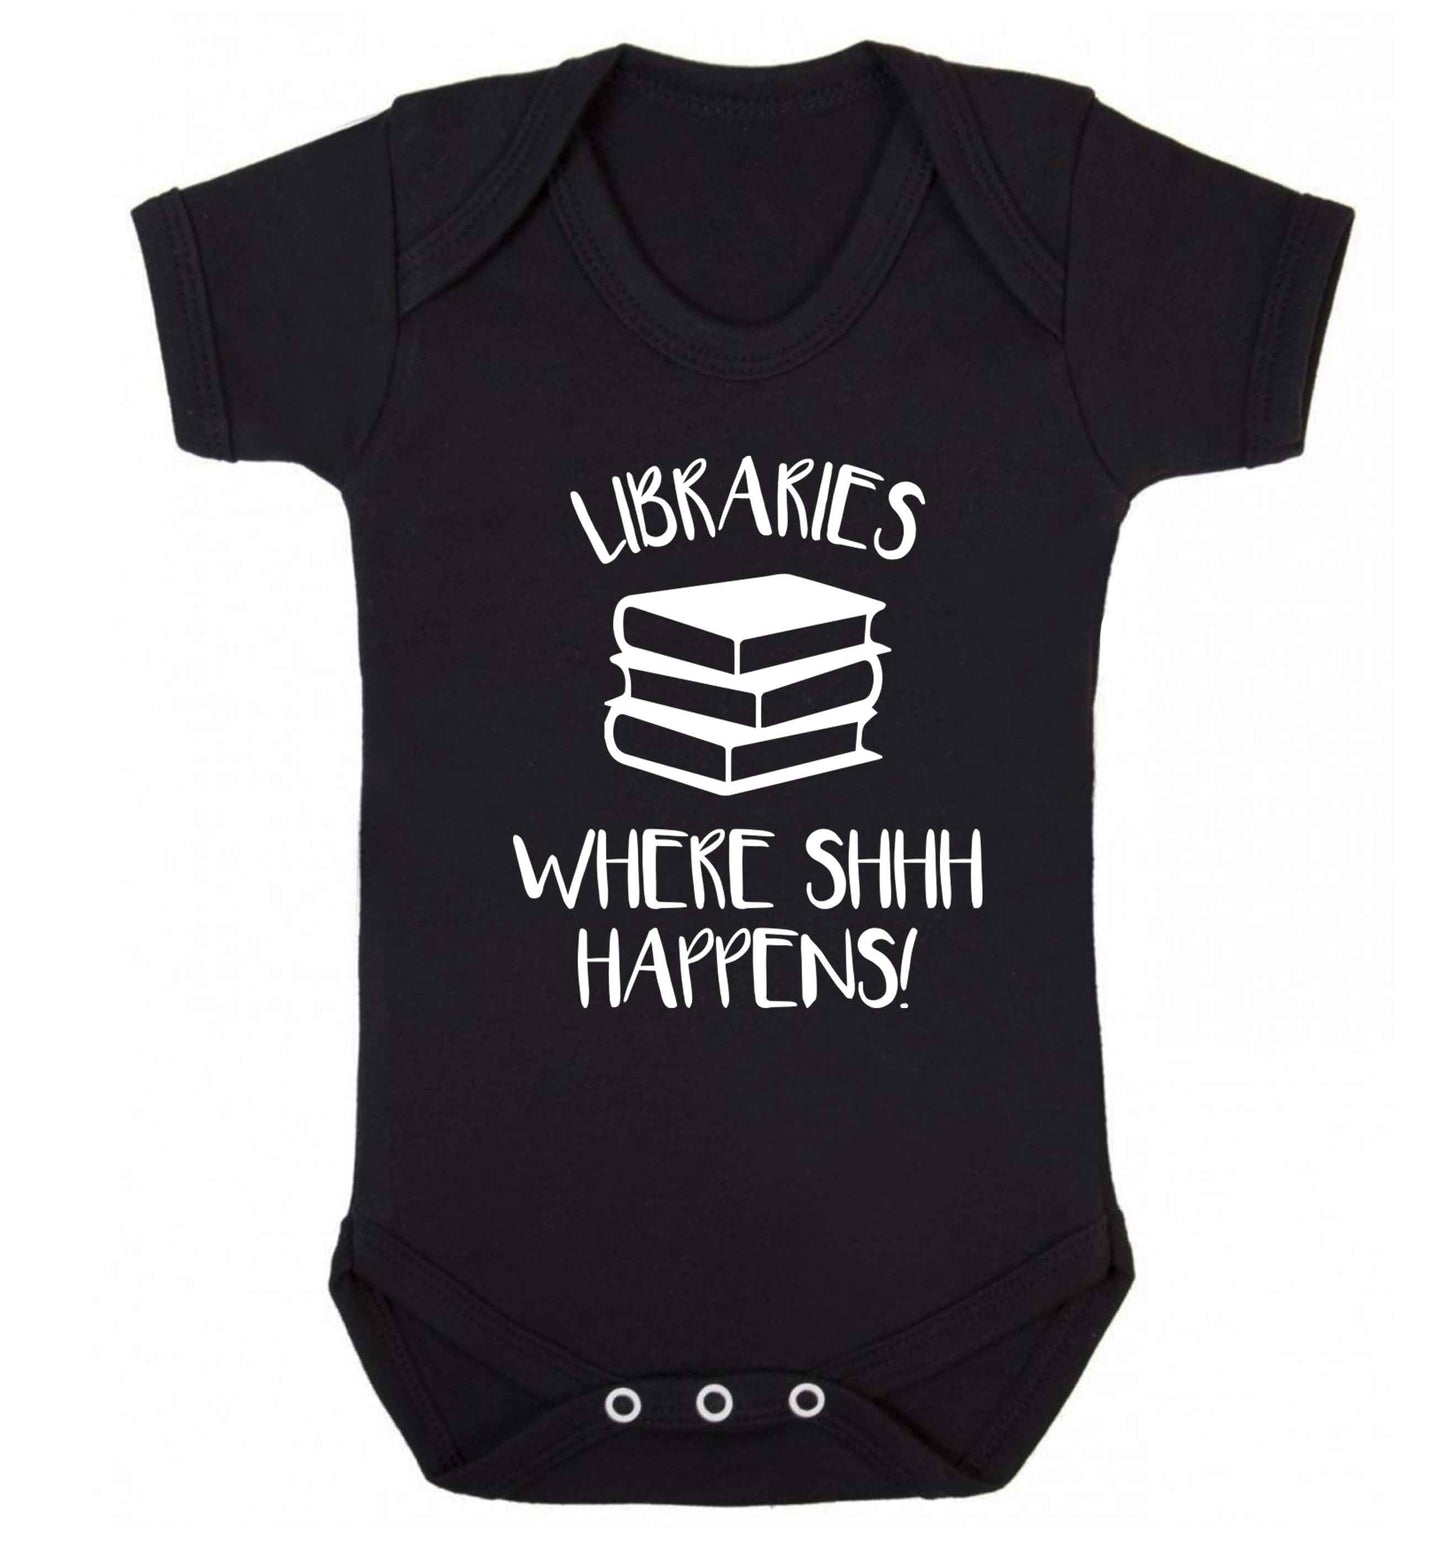 Libraries where shh happens! Baby Vest black 18-24 months